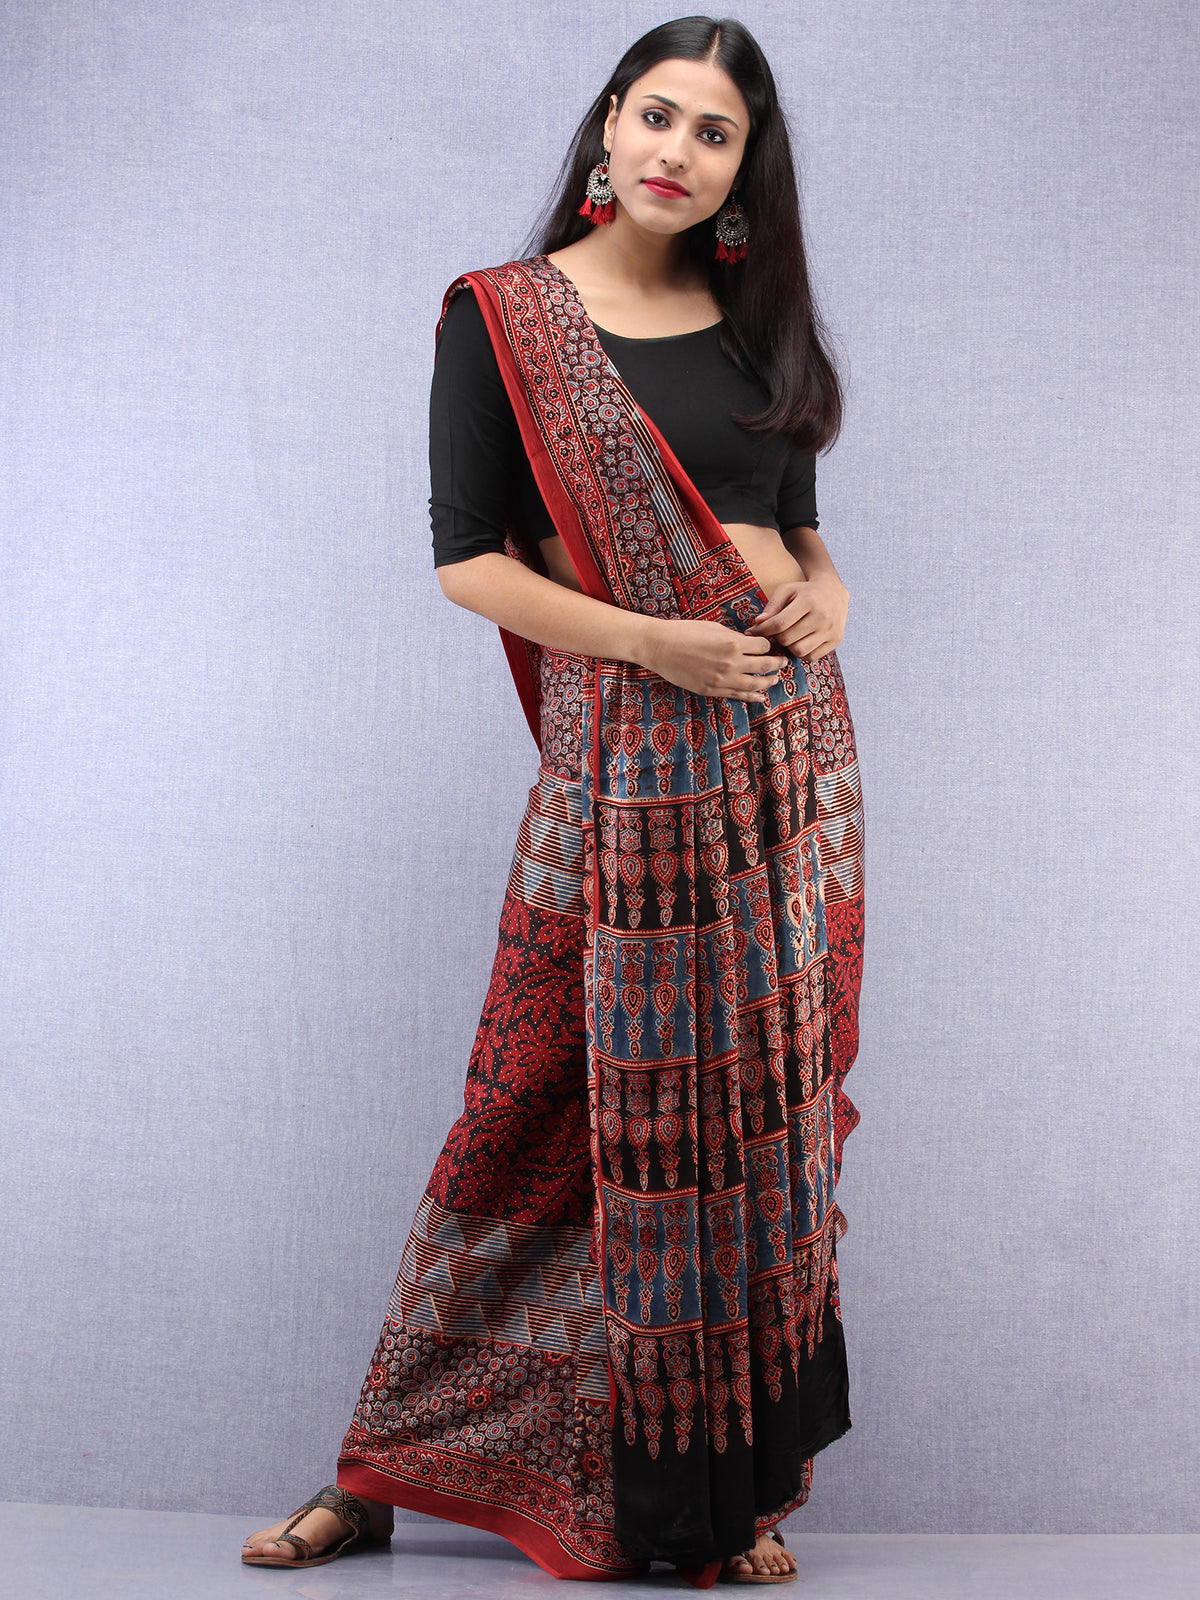 Red Beige Black Indigo Ajrakh Hand Block Printed Modal Silk Saree - S031704443